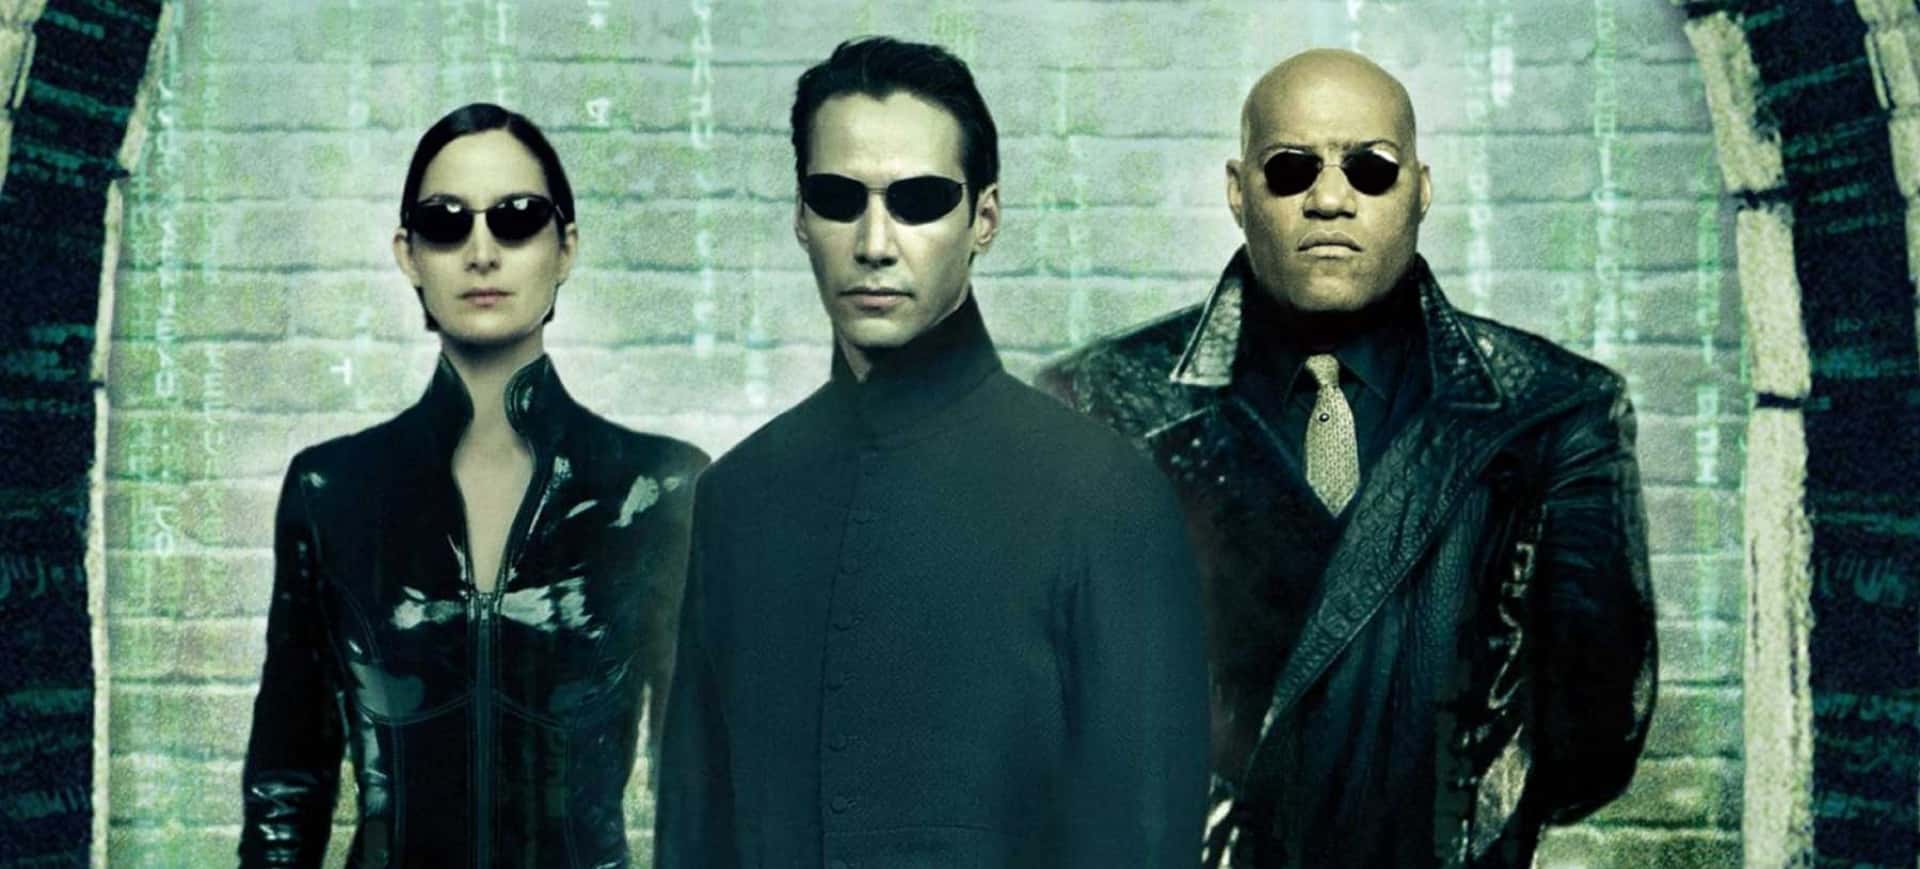 Matrix - 5 filmes imperdíveis para quem curte tecnologia